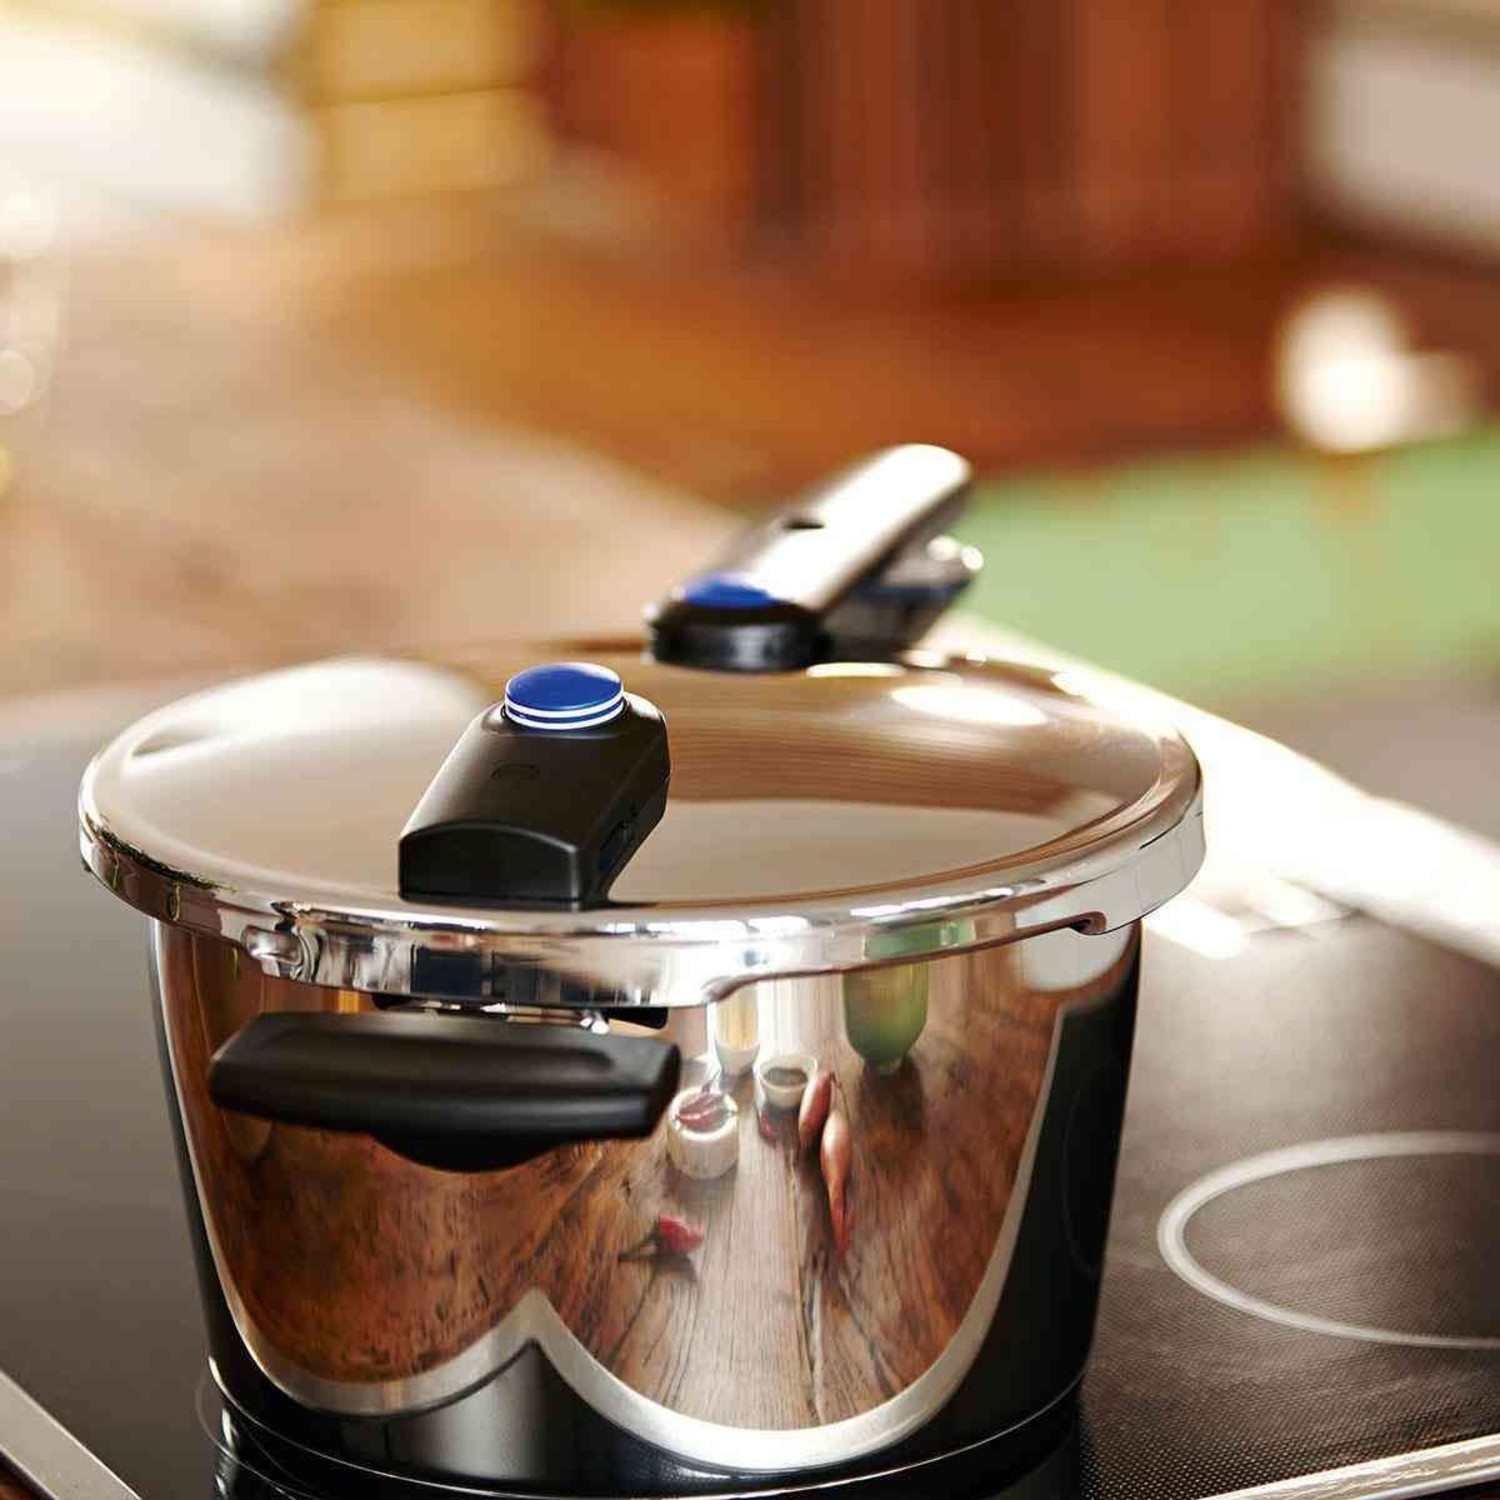 https://cdn.shoplightspeed.com/shops/633447/files/49679153/1500x4000x3/63-quart-pressure-cooker.jpg